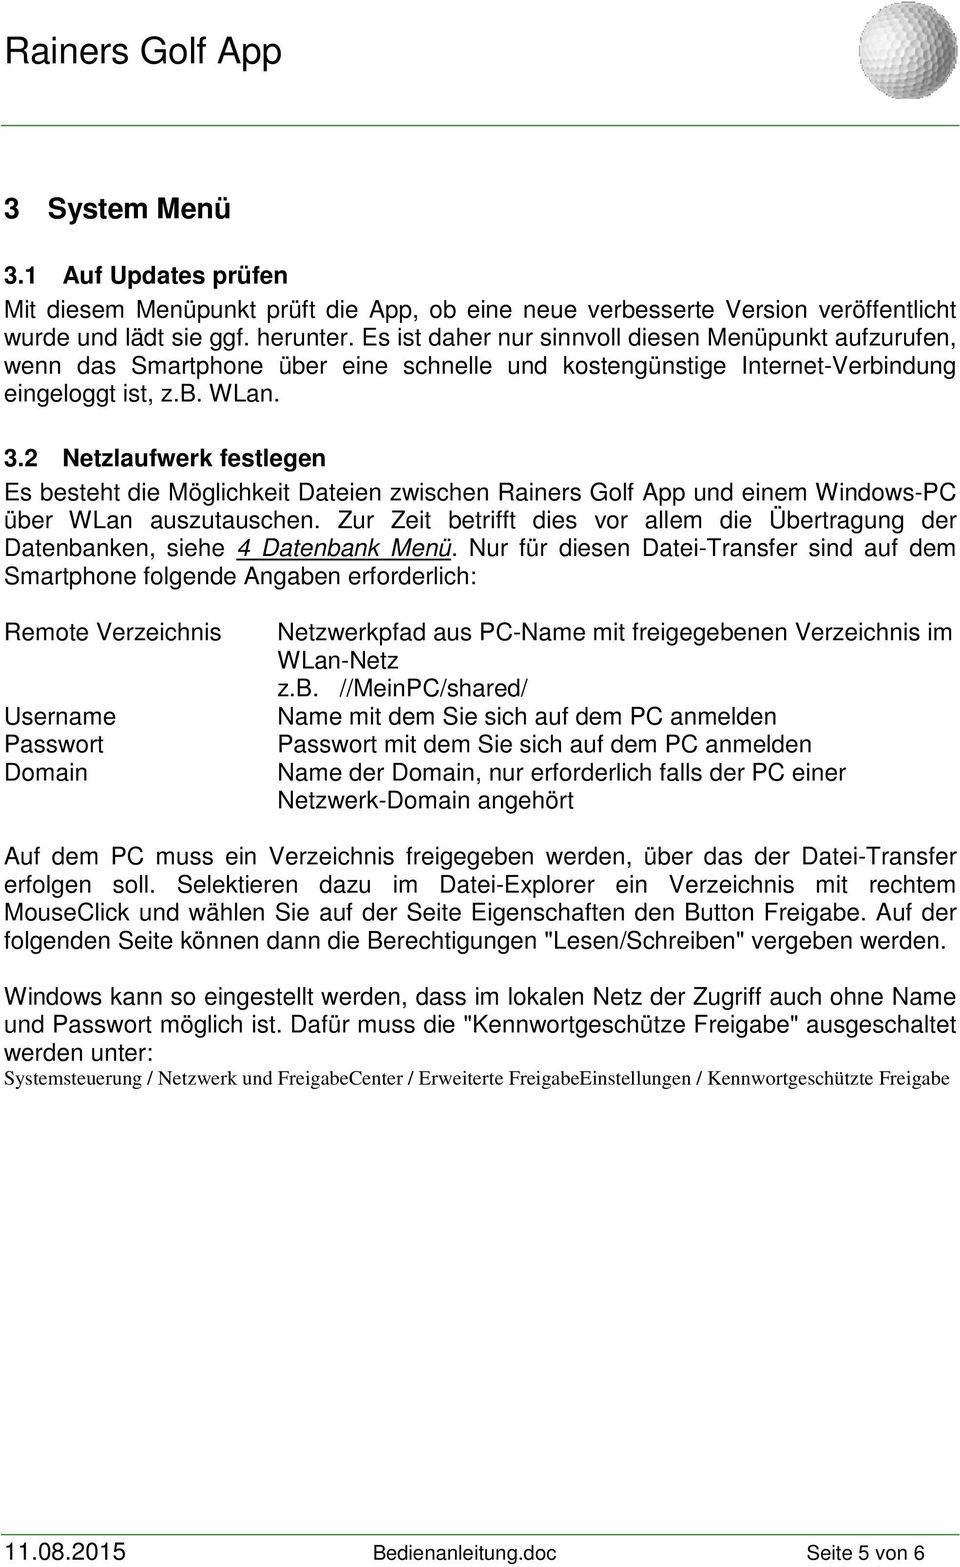 2 Netzlaufwerk festlegen Es besteht die Möglichkeit Dateien zwischen Rainers Golf App und einem Windows-PC über WLan auszutauschen.